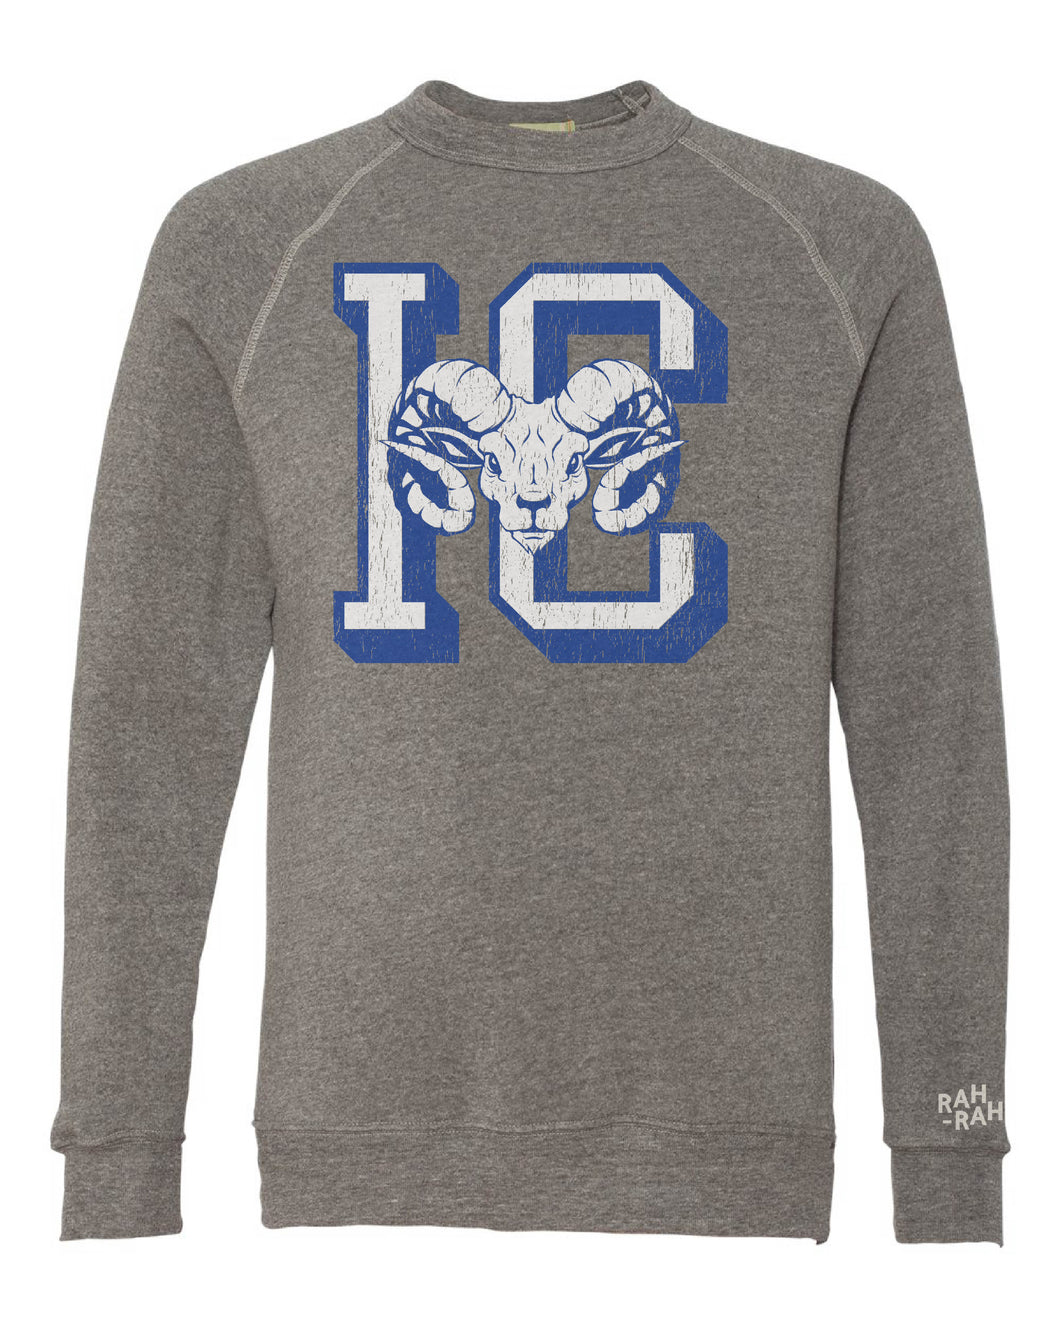 IC Rams Grey Adult Sweatshirt